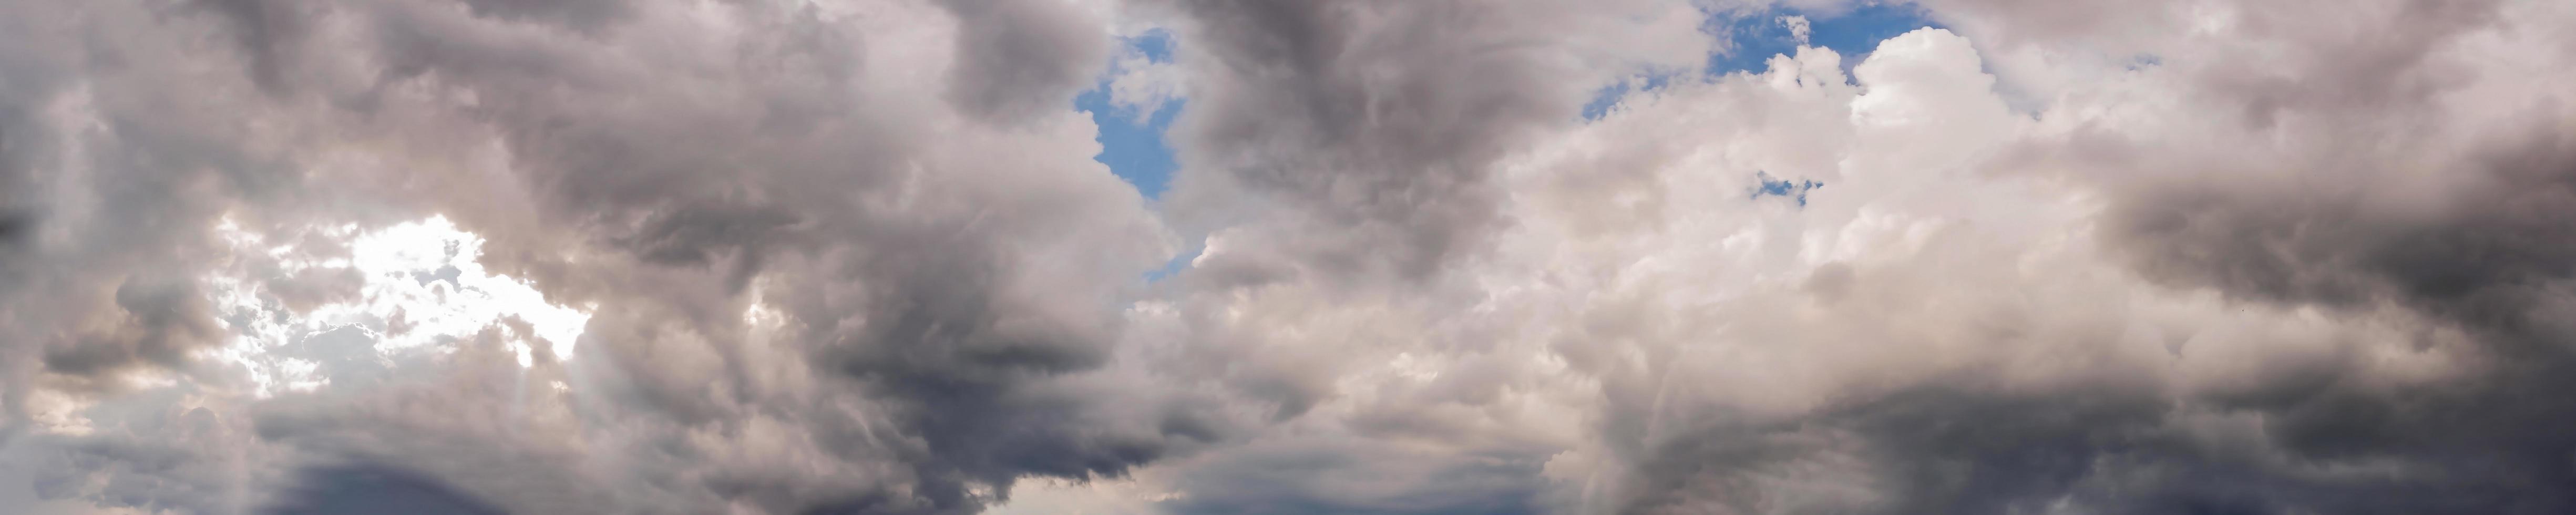 dramatisk panoramahimmel med stormmoln på en molnig dag. foto